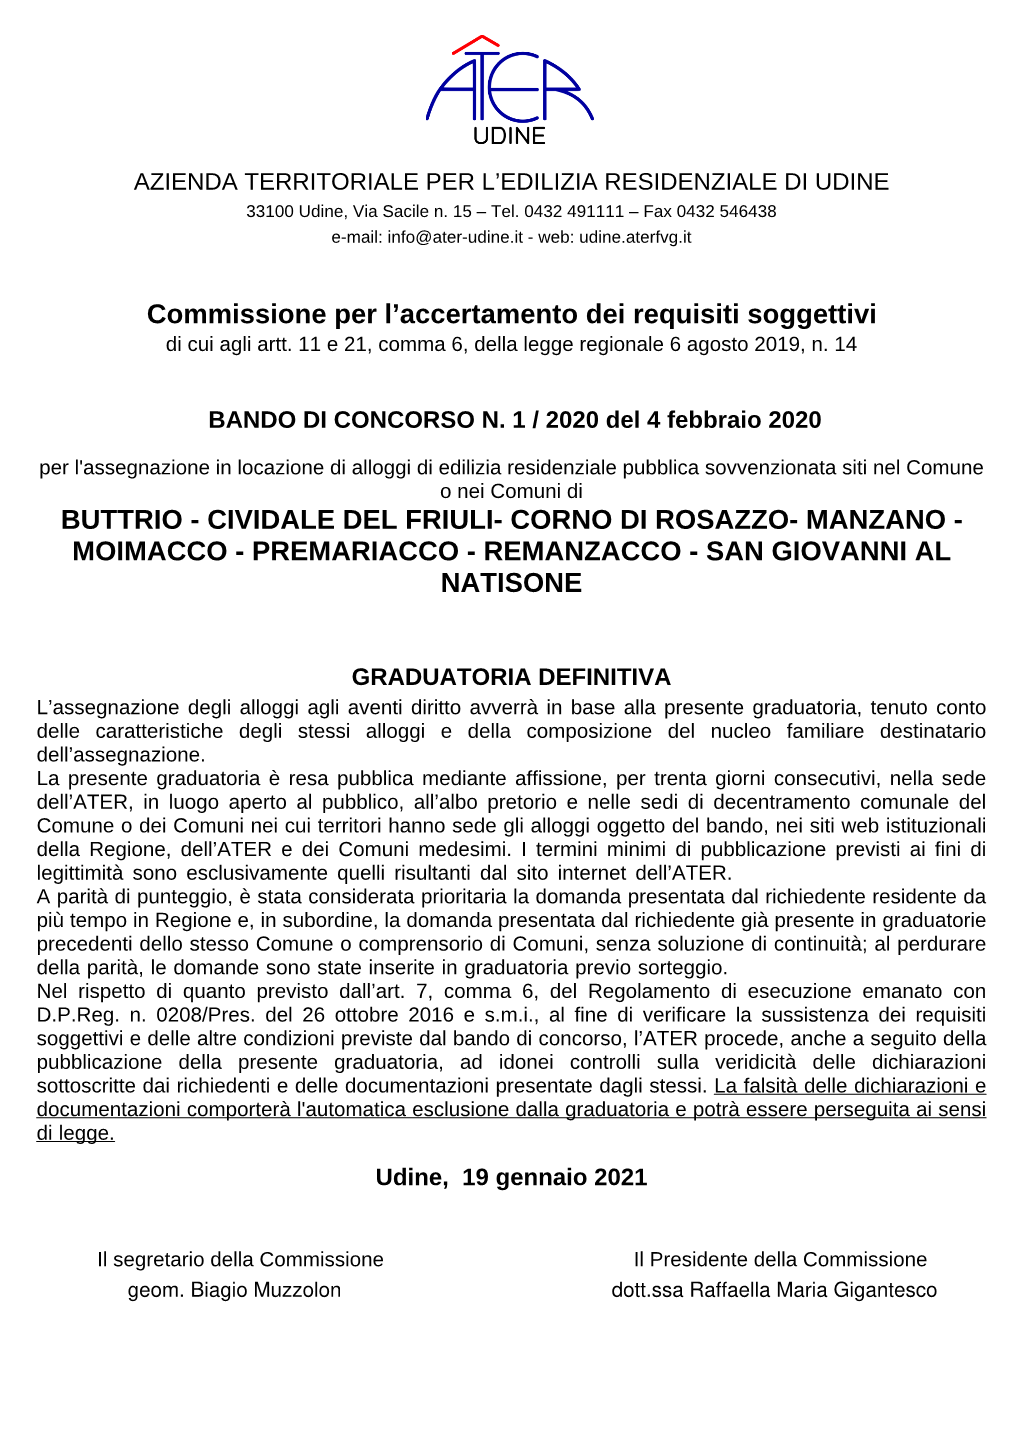 Buttrio - Cividale Del Friuli- Corno Di Rosazzo- Manzano - Moimacco - Premariacco - Remanzacco - San Giovanni Al Natisone